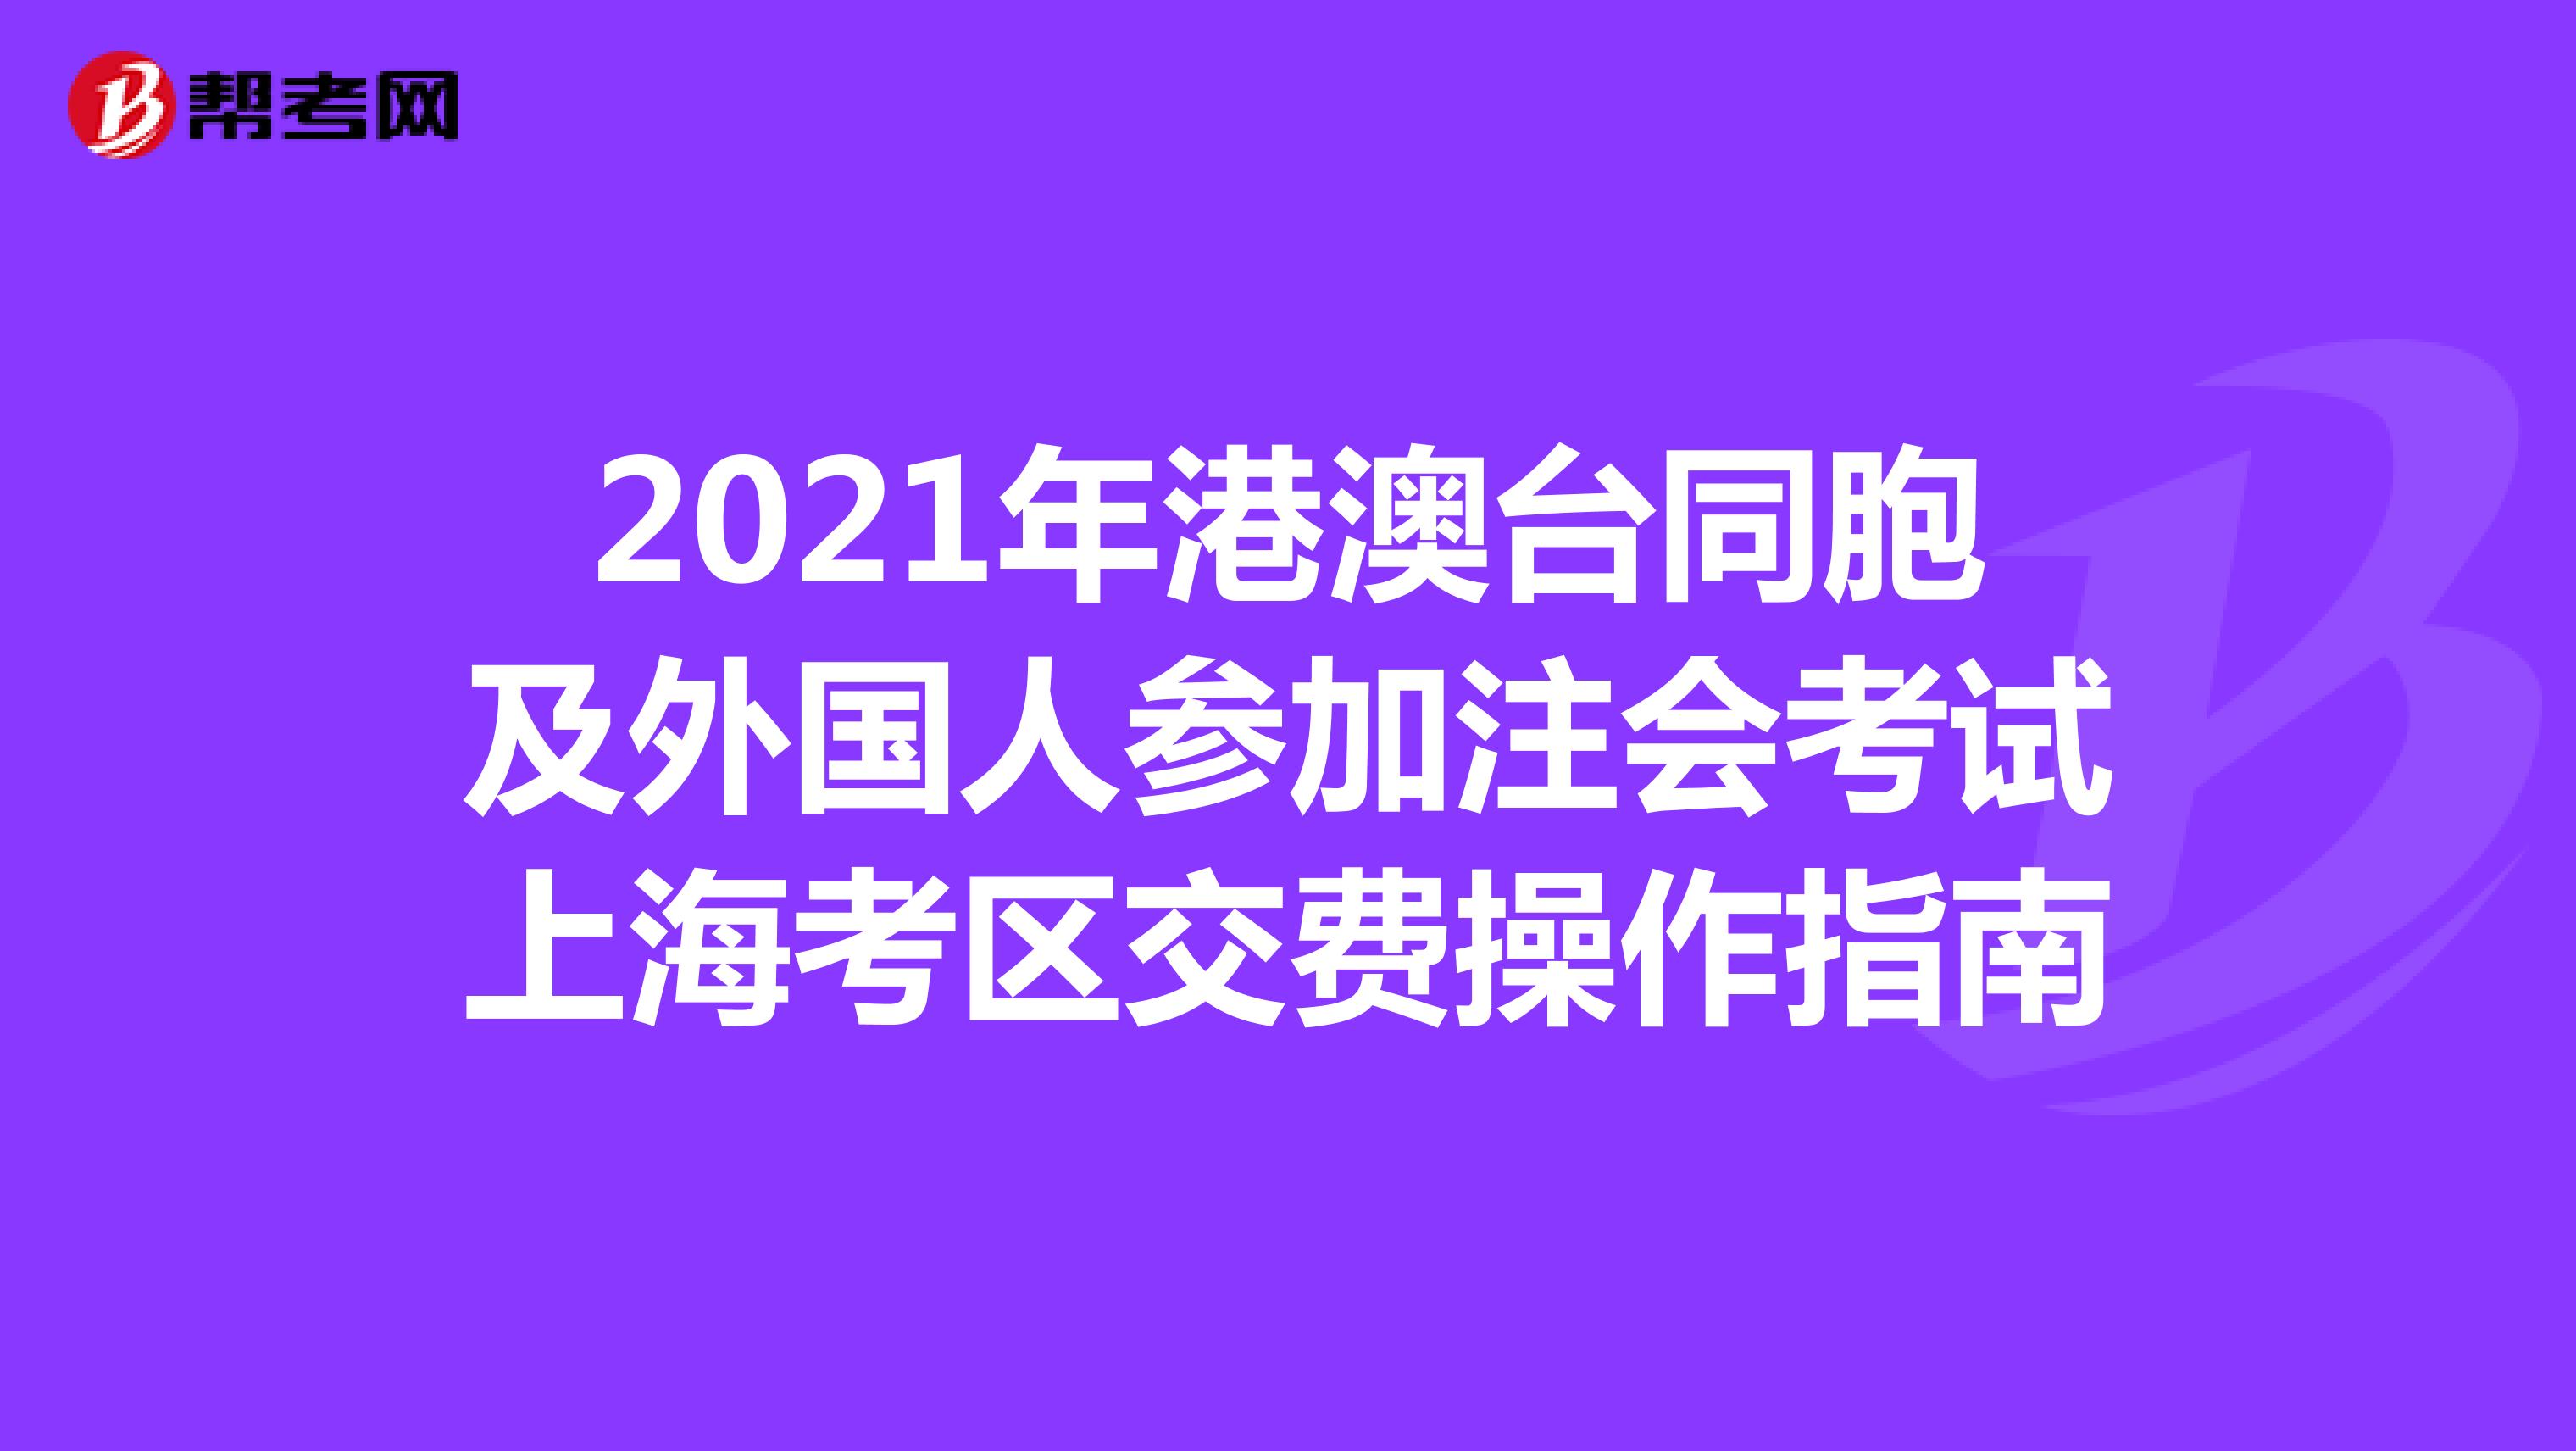 2021年港澳台同胞及外国人参加注会考试上海考区交费操作指南